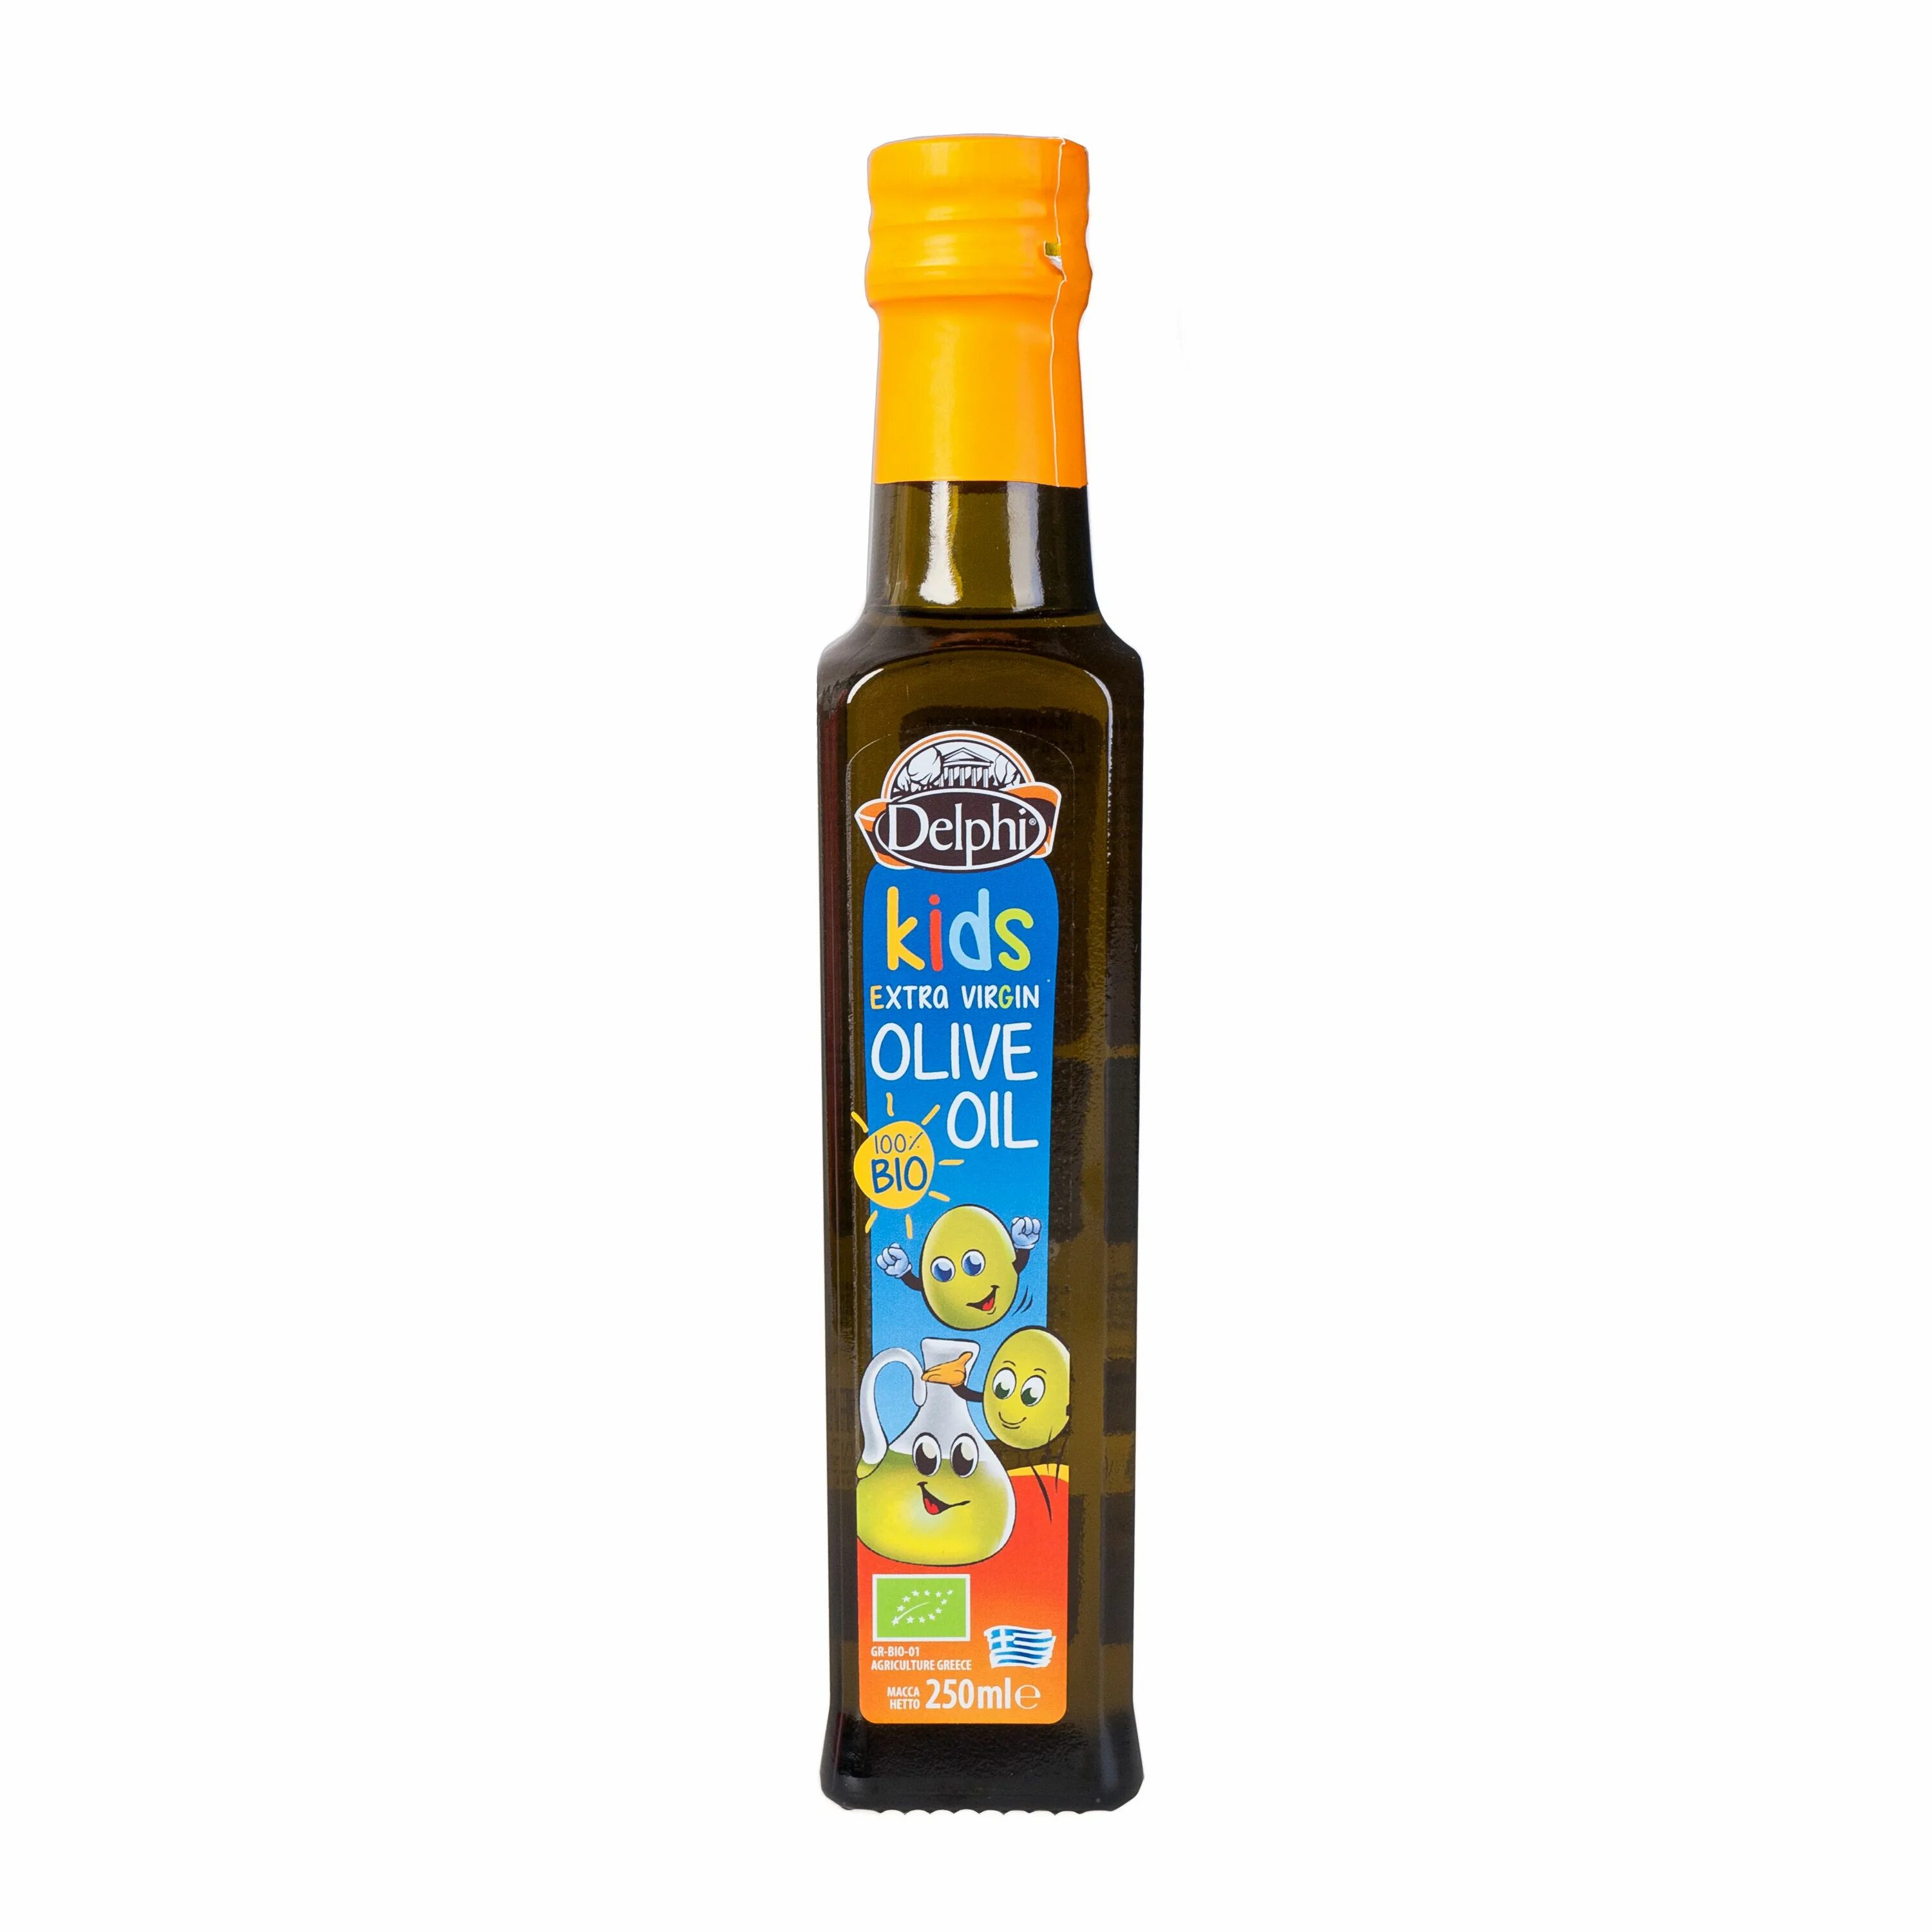 Масло оливковое e.v. био Kids DELPHI 0,25 Л. Масло оливковое Extra Virgin Olive Oil DELPHI 0,25л. Масло оливковое DELPHI С Крита ст/б 250мл. DELPHI масло оливковое Extra Virgin нерафинированное. Оливковое масло для детей